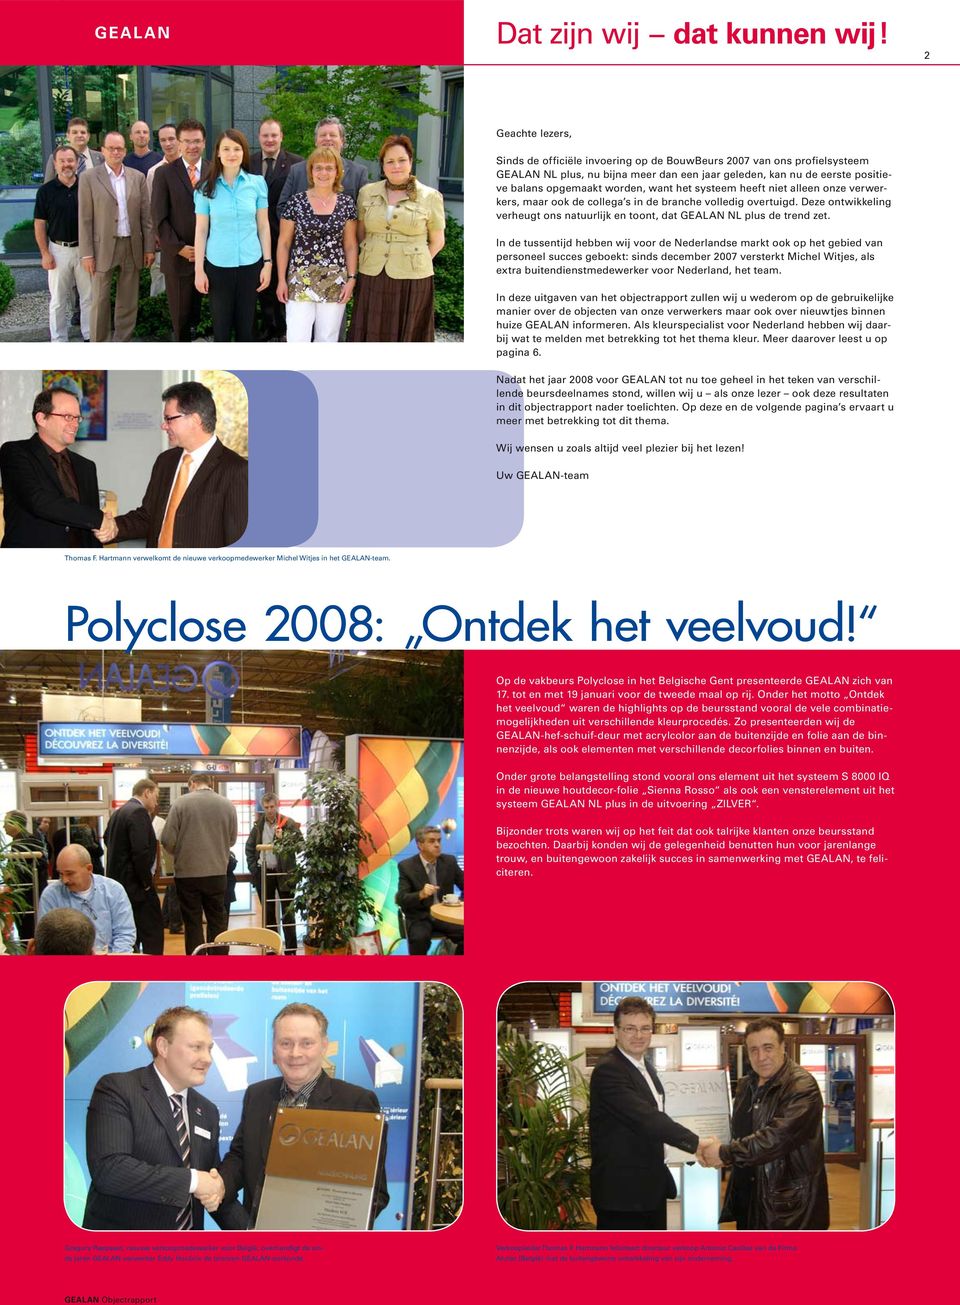 In de tussentijd hebben wij voor de Nederlandse markt ook op het gebied van personeel succes geboekt: sinds december 2007 versterkt Michel Witjes, als extra buitendienstmedewerker voor Nederland, het